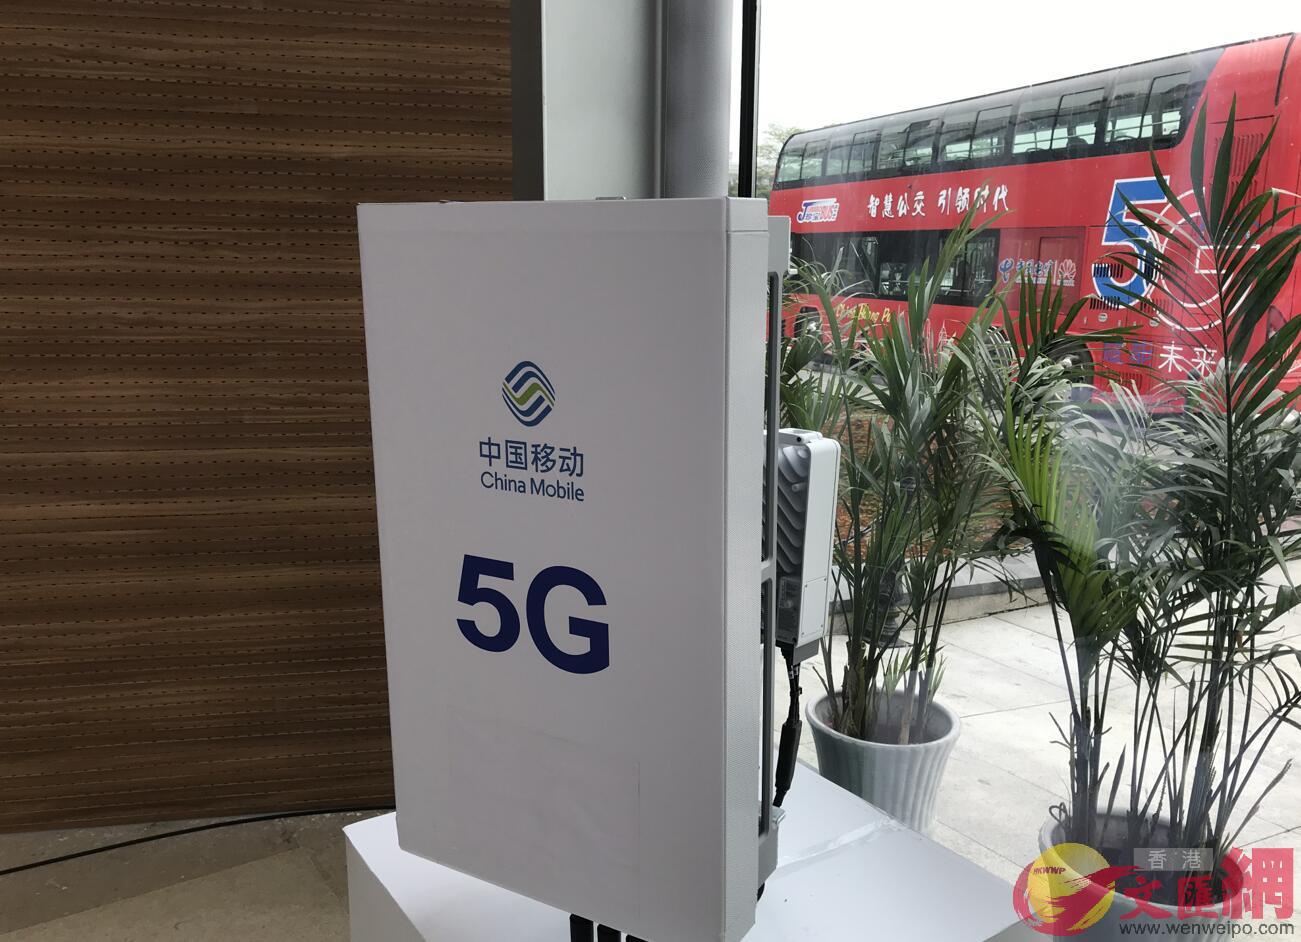 華為生產的5G基站在現場發送信號 ]敖敏輝攝^